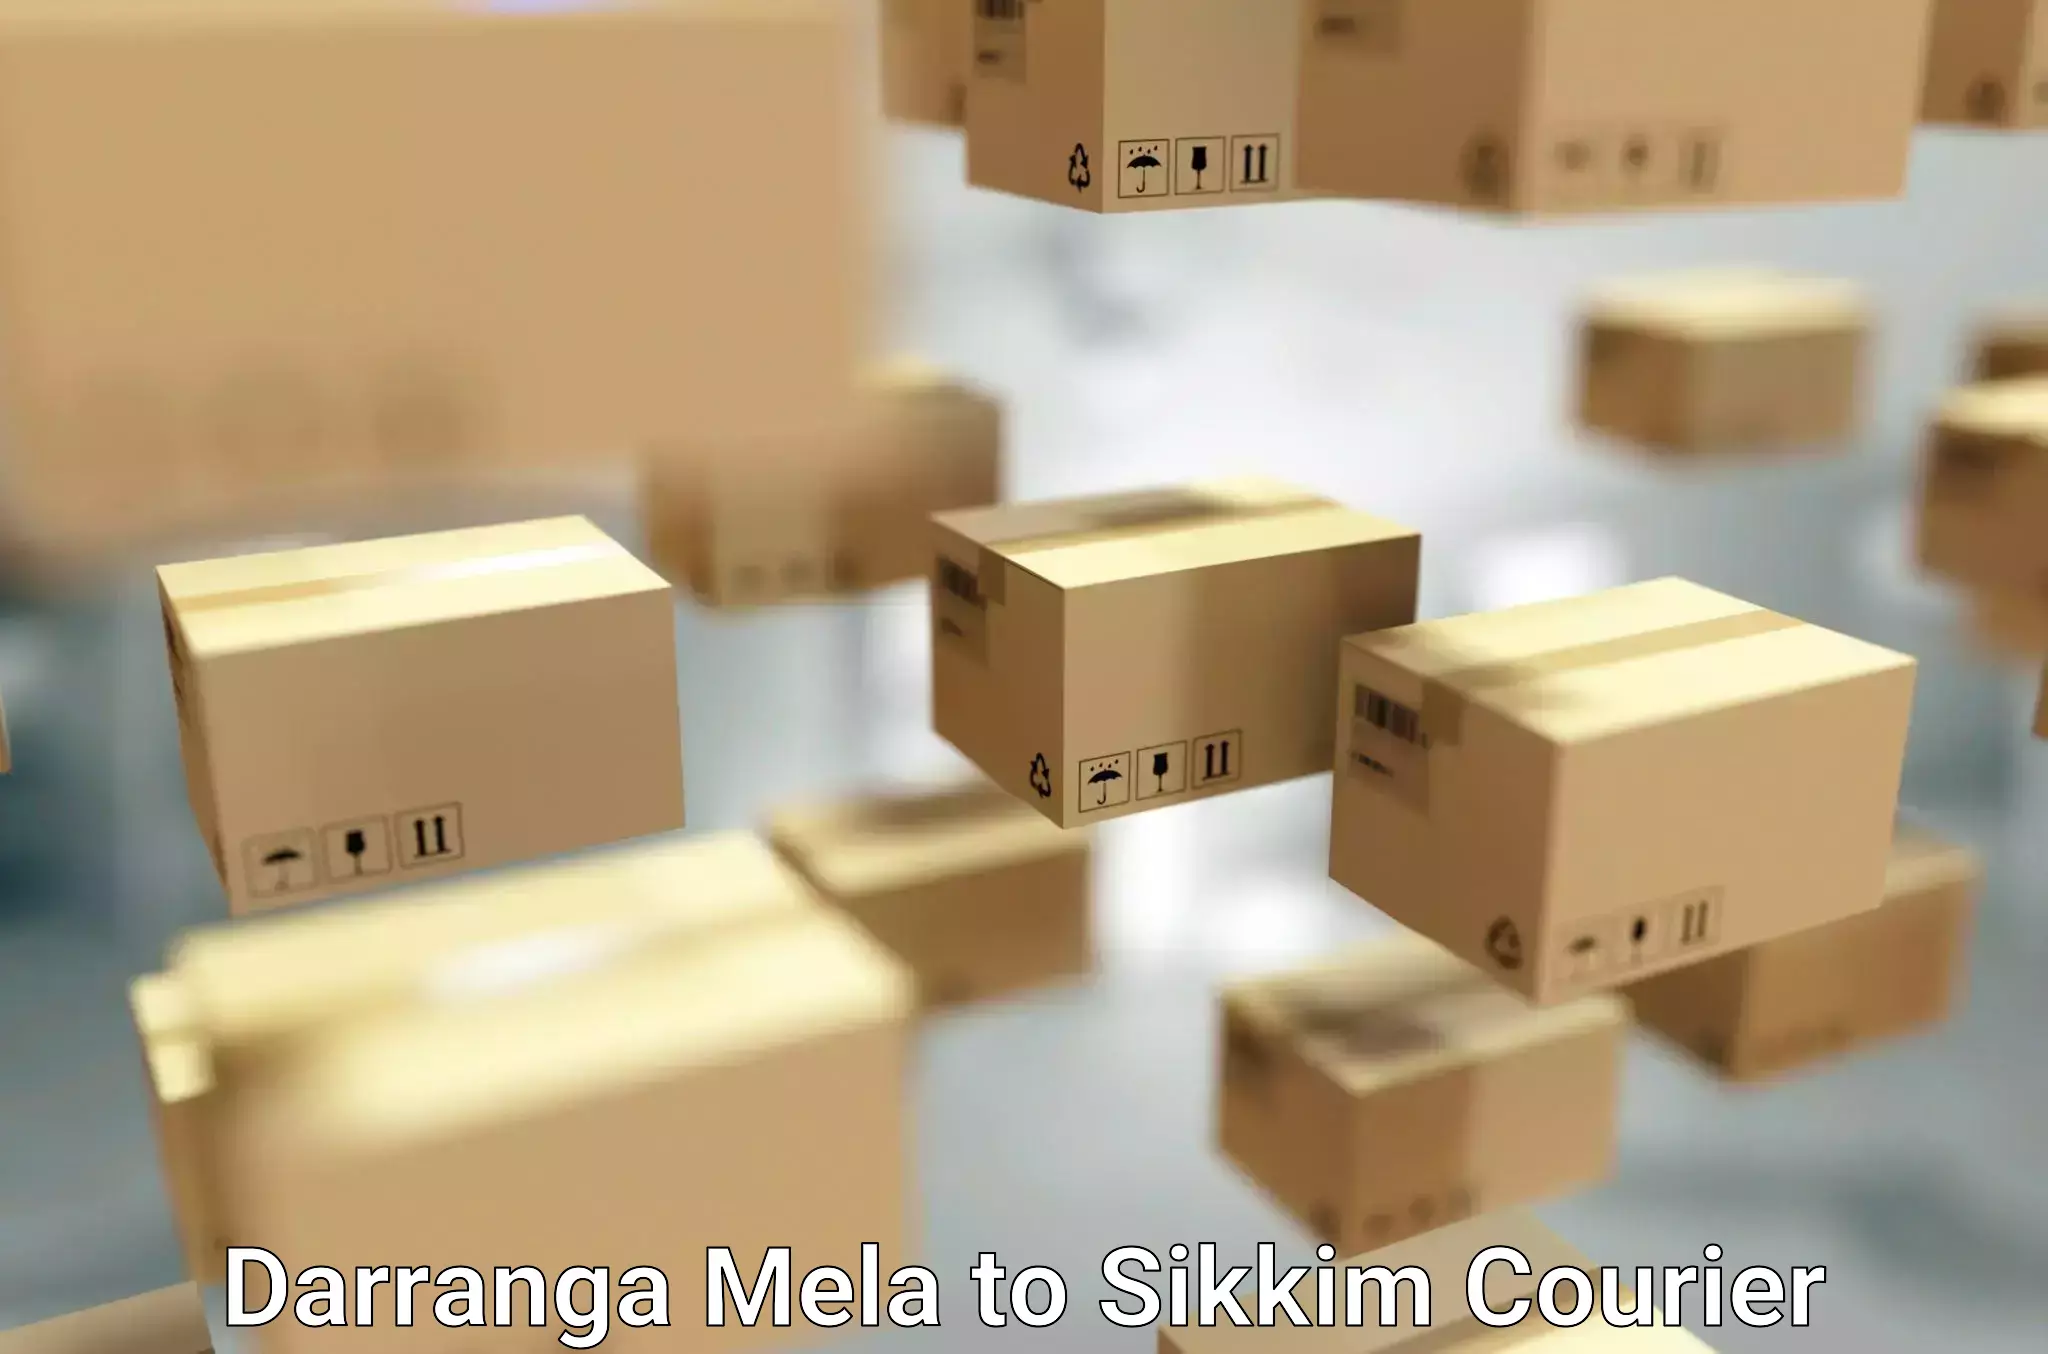 Seamless moving process Darranga Mela to Jorethang